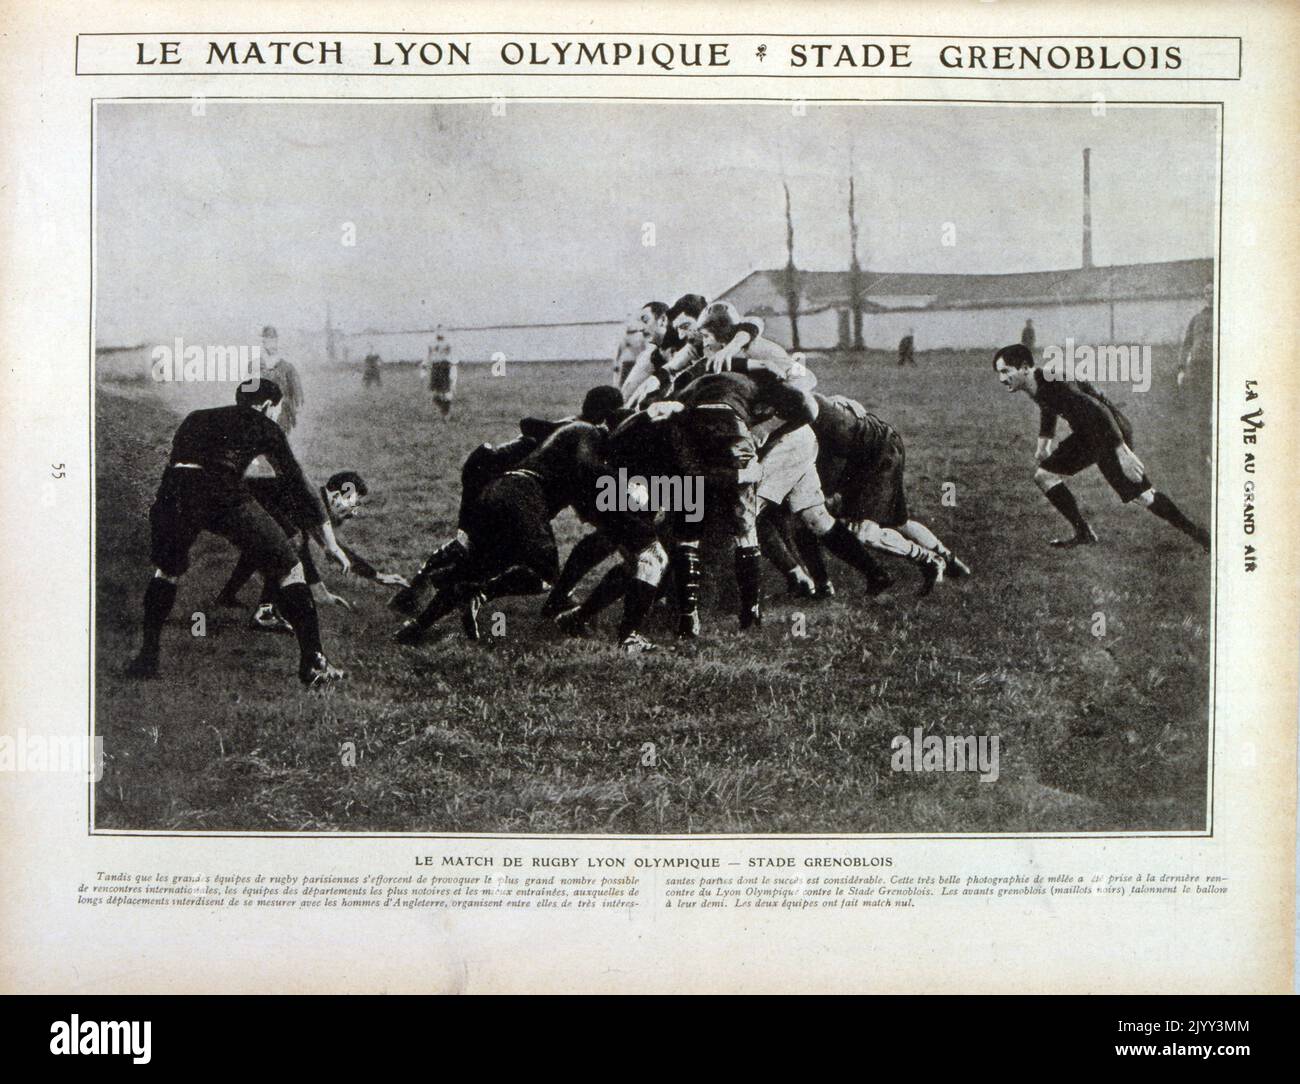 Französische Vintage-Fotografie von Rugby-Union-Spielern des Teams von Lyon Olympique in Aktion; 1905. Le LOU, wie es traditionell bekannt ist, ist einer der ältesten Sportvereine Frankreichs und einer der ersten außerhalb von Paris, der eine Rugby-Sektion gegründet hat. Der ursprüngliche Name des Clubs war Racing Club, das Ergebnis einer Fusion des Racing Club de Vaise und des Rugby Club de Lyon. Es wurde 1902 in Racing et Cercles Reunis umbenannt, nachdem mehrere andere Vereine ihm beigetreten waren, dann ein paar Monate später Lyon Olympique Stockfoto